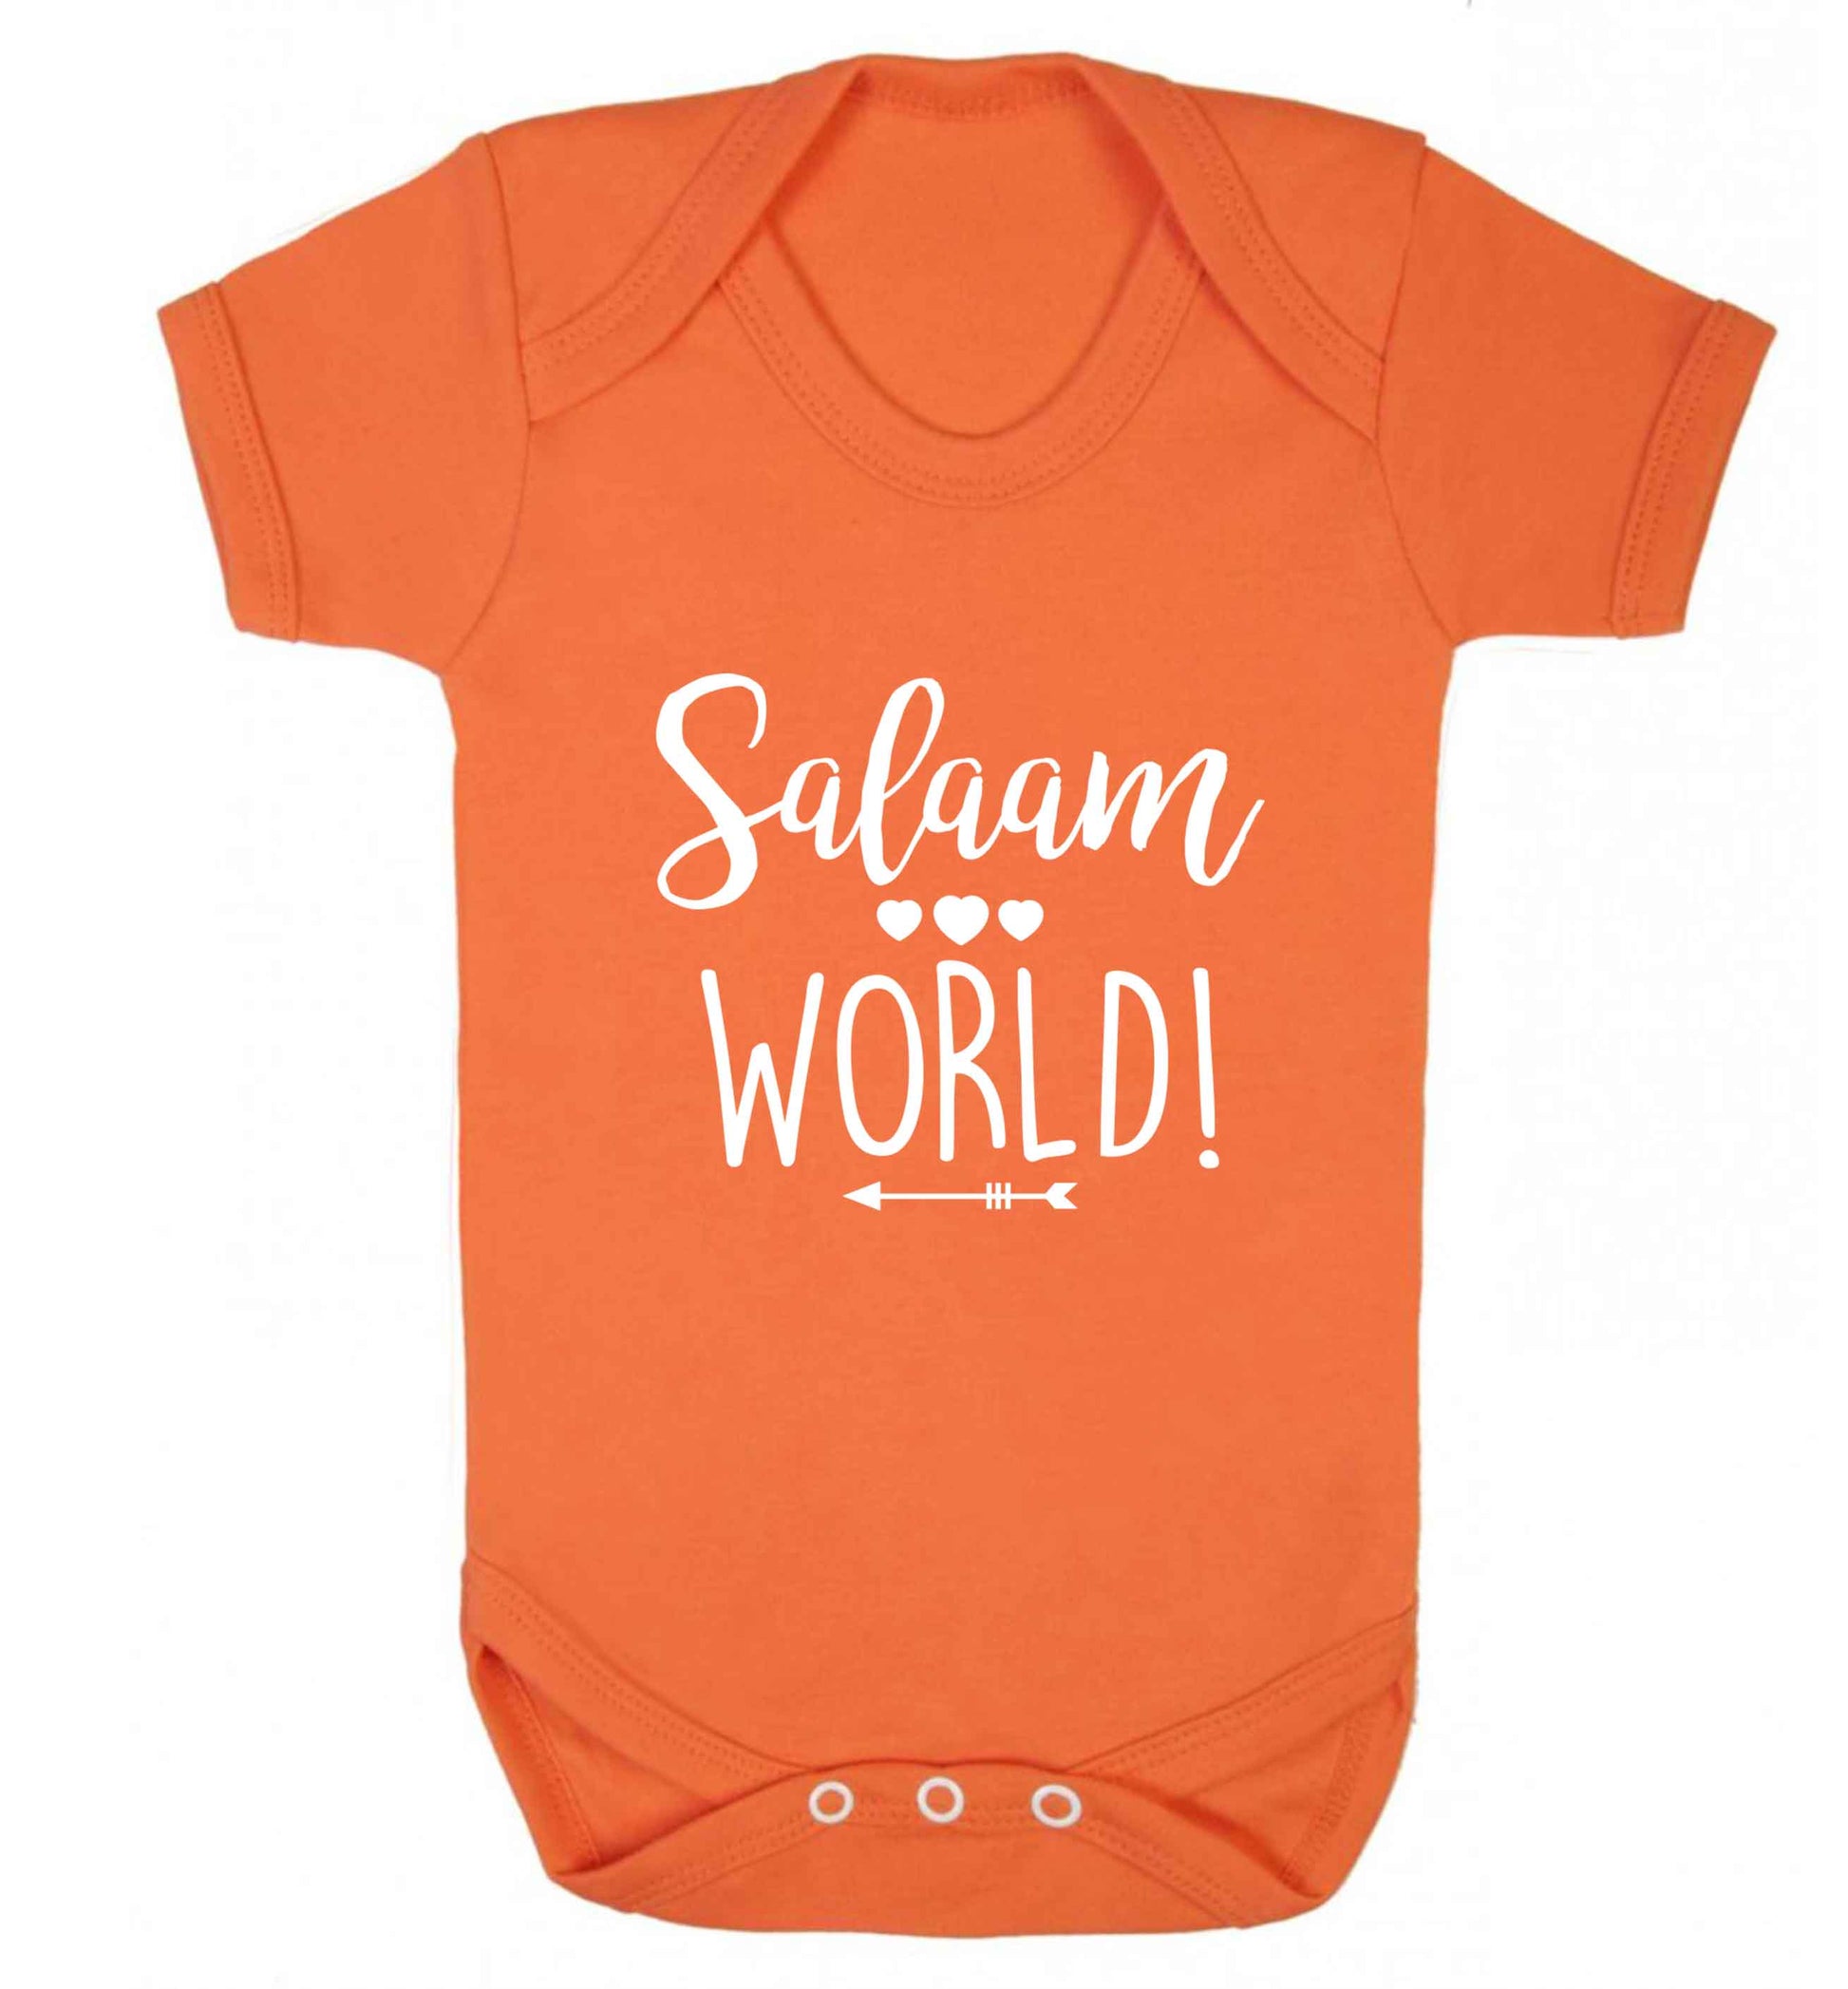 Salaam world baby vest orange 18-24 months